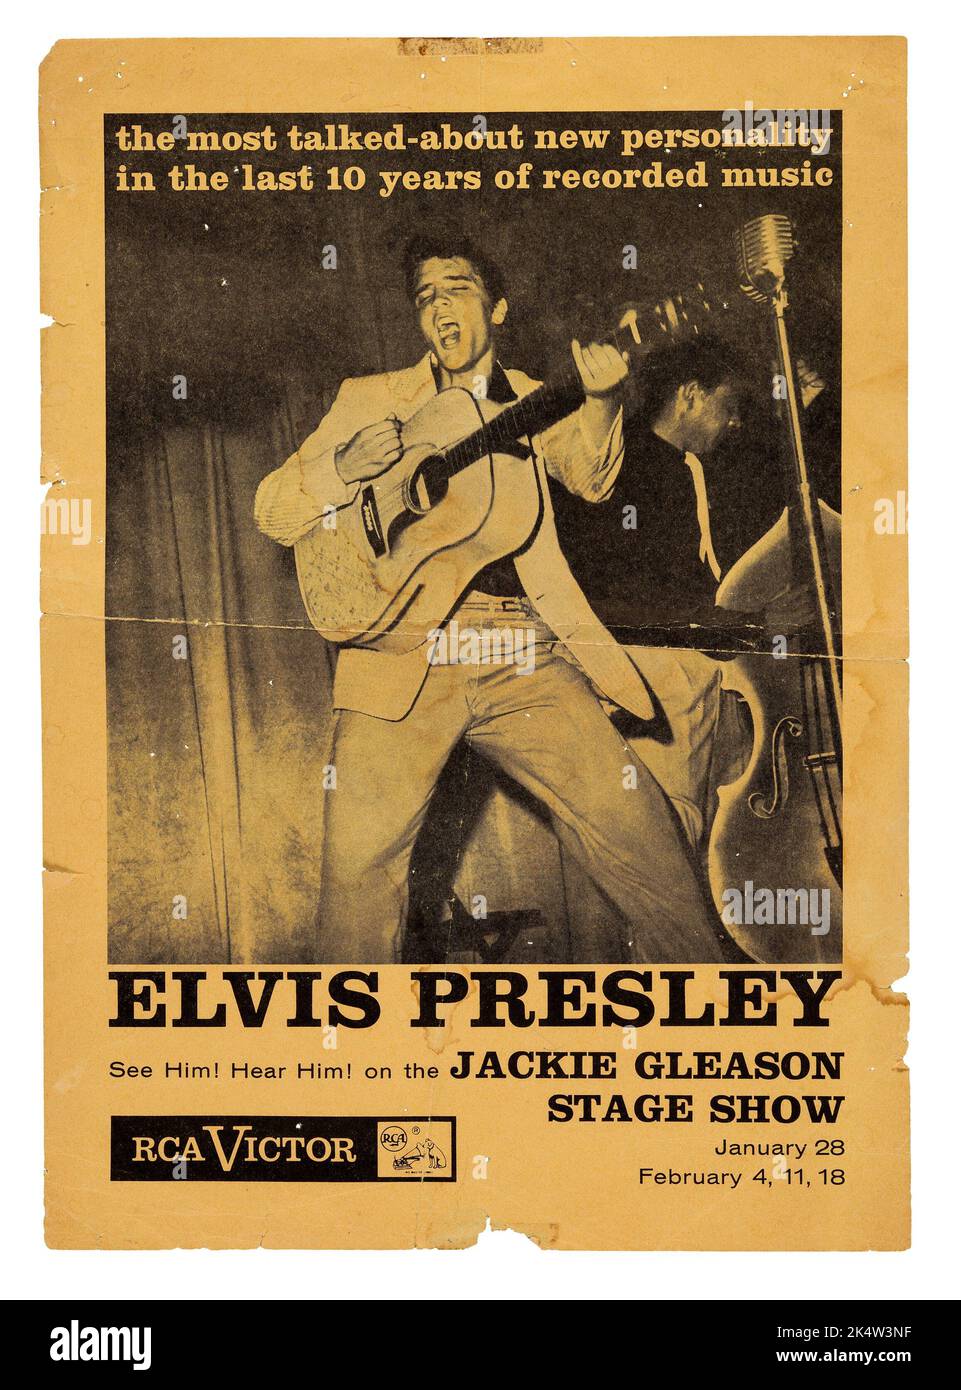 Elvis Presley janvier 1956 RCA Handbill promotionnel pour la toute première apparition télévisée. Jackie Gleason Stage Show. Banque D'Images